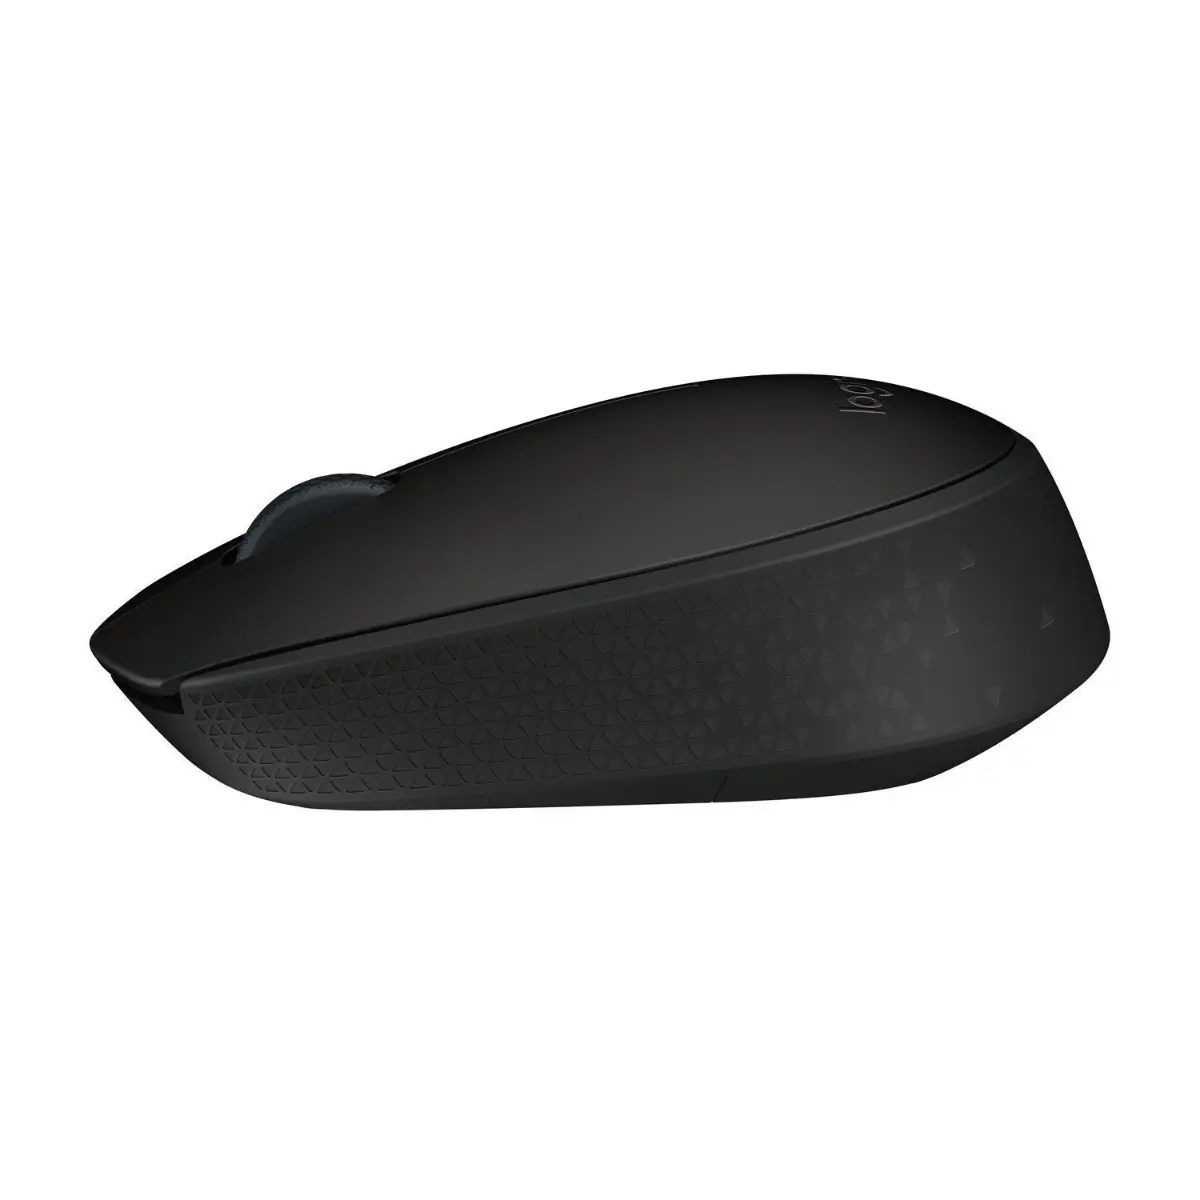 Mouse wireless Logitech B170, Negru